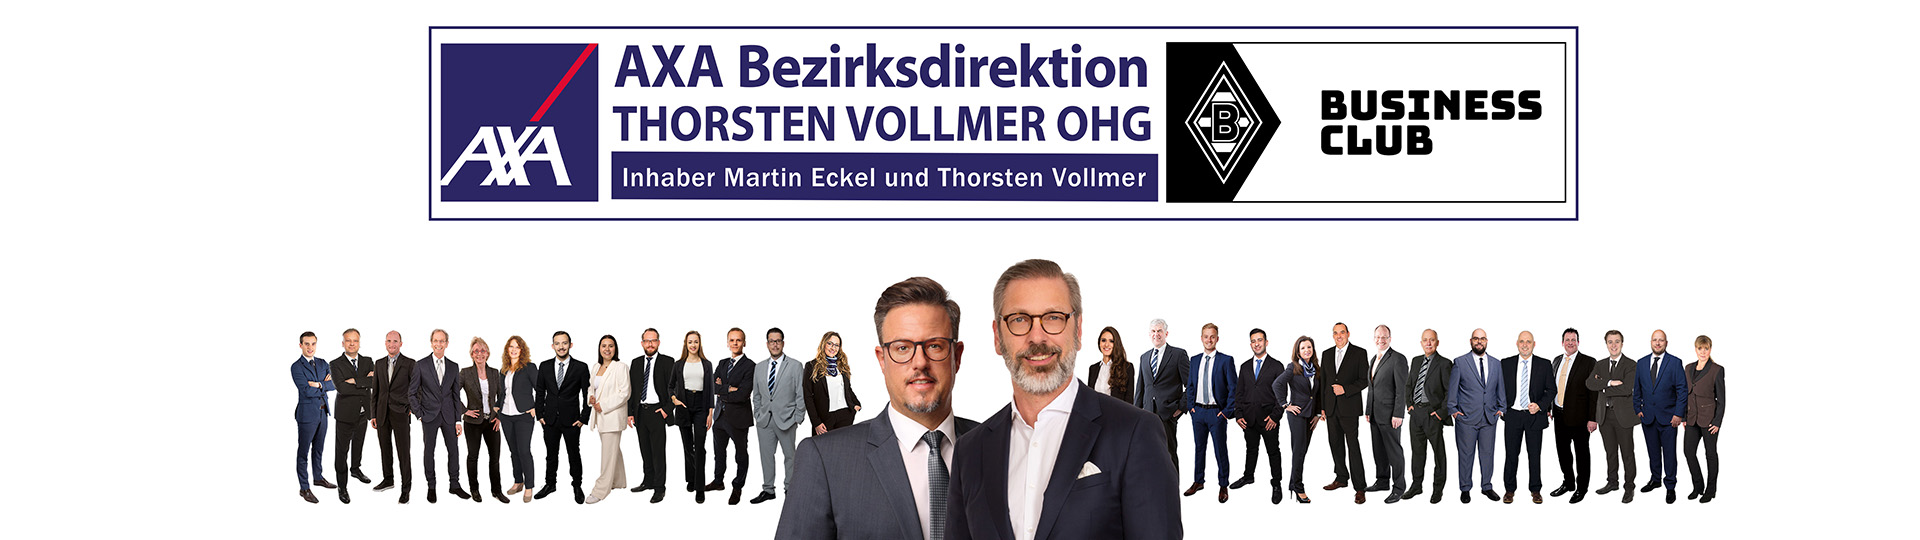 AXA Bezirksdirektion in Kassel Thorsten Vollmer OHG aus Kassel